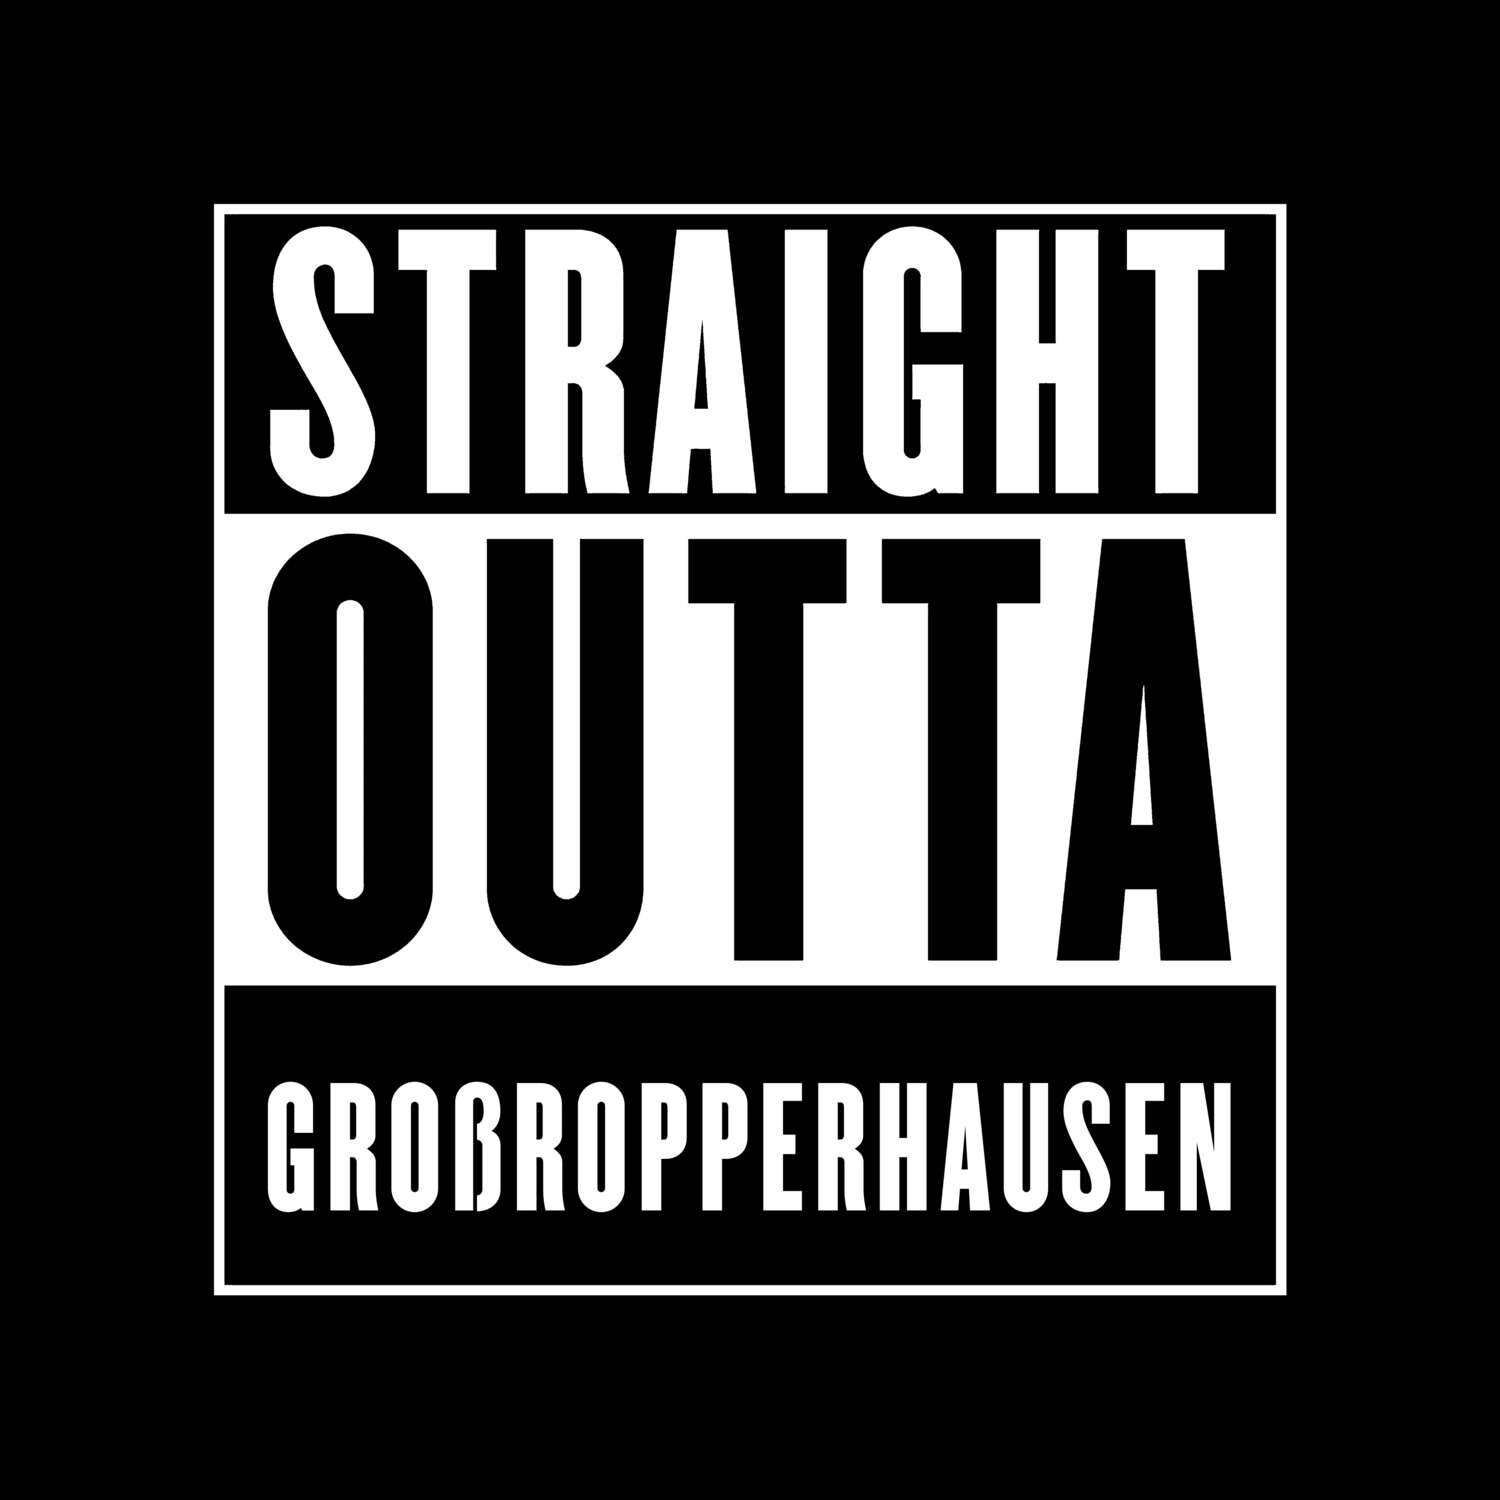 Großropperhausen T-Shirt »Straight Outta«